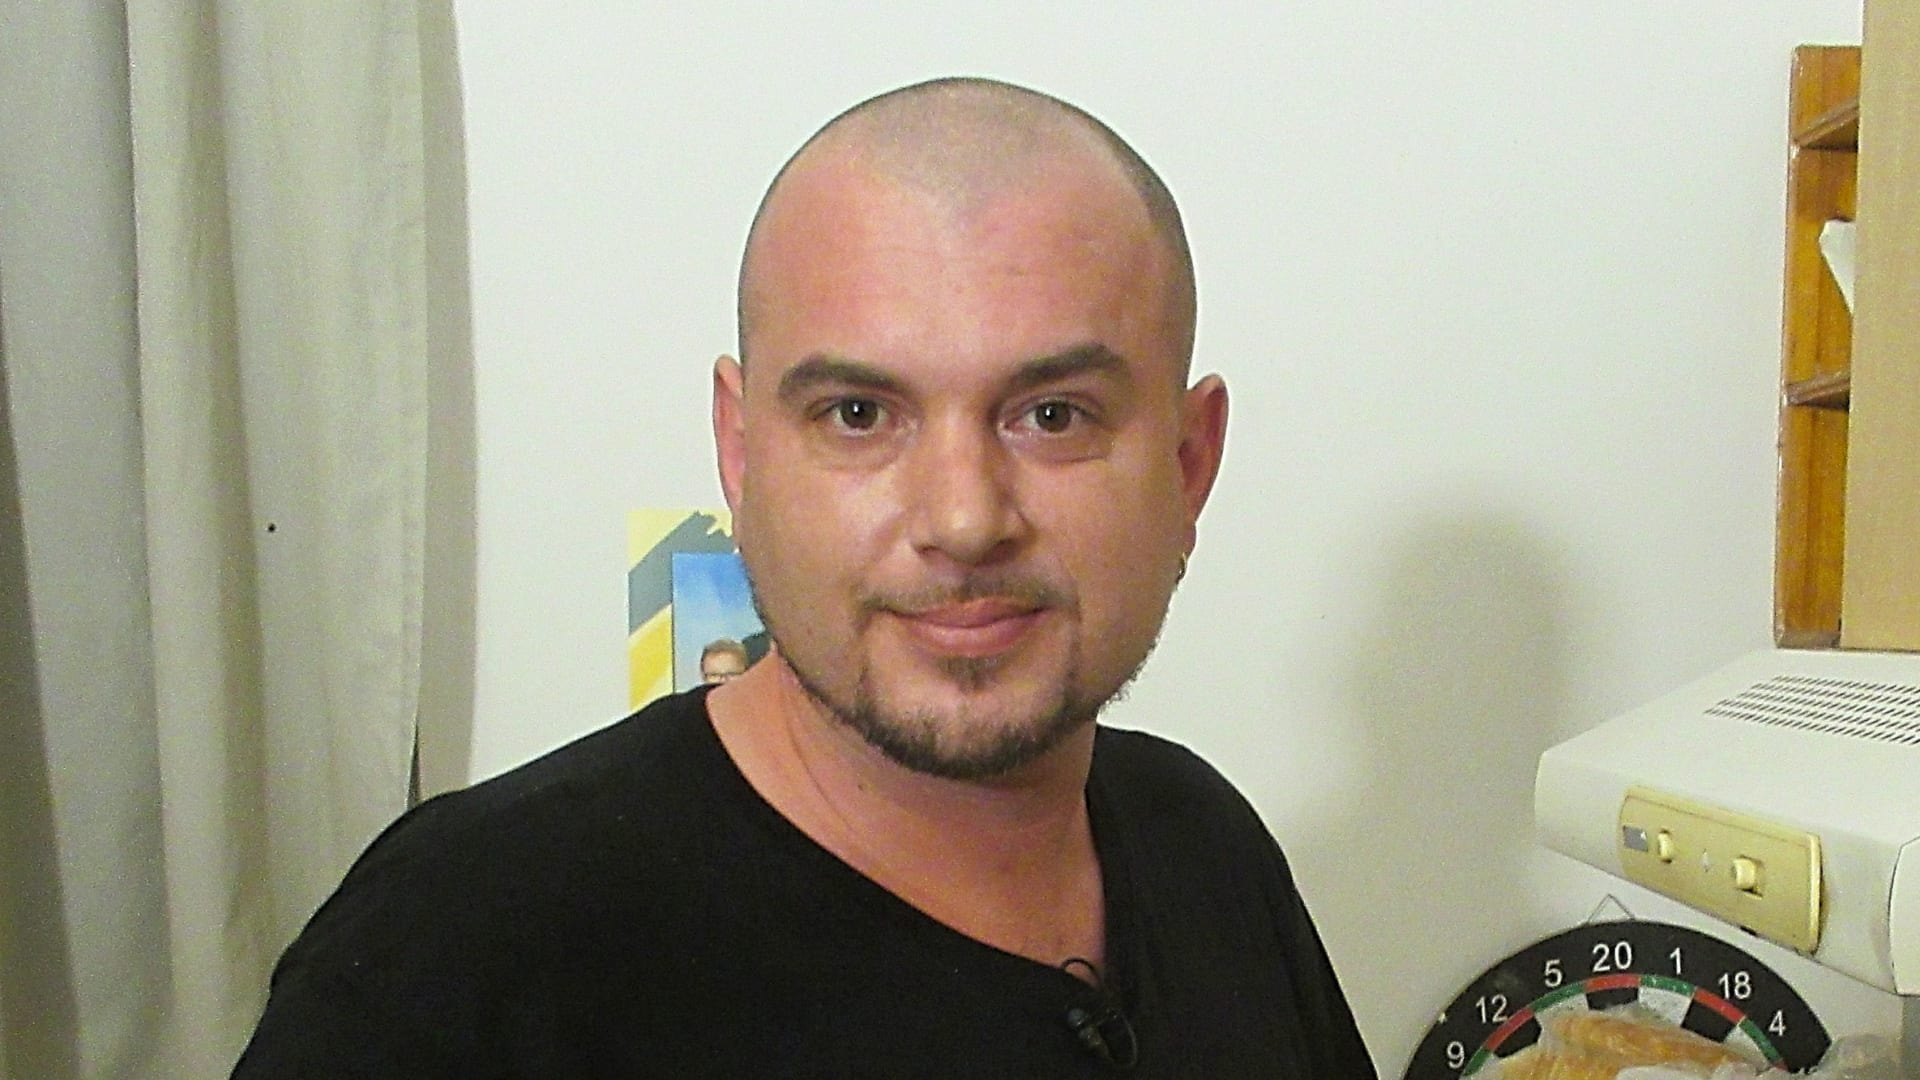 Jaroslav Moravec